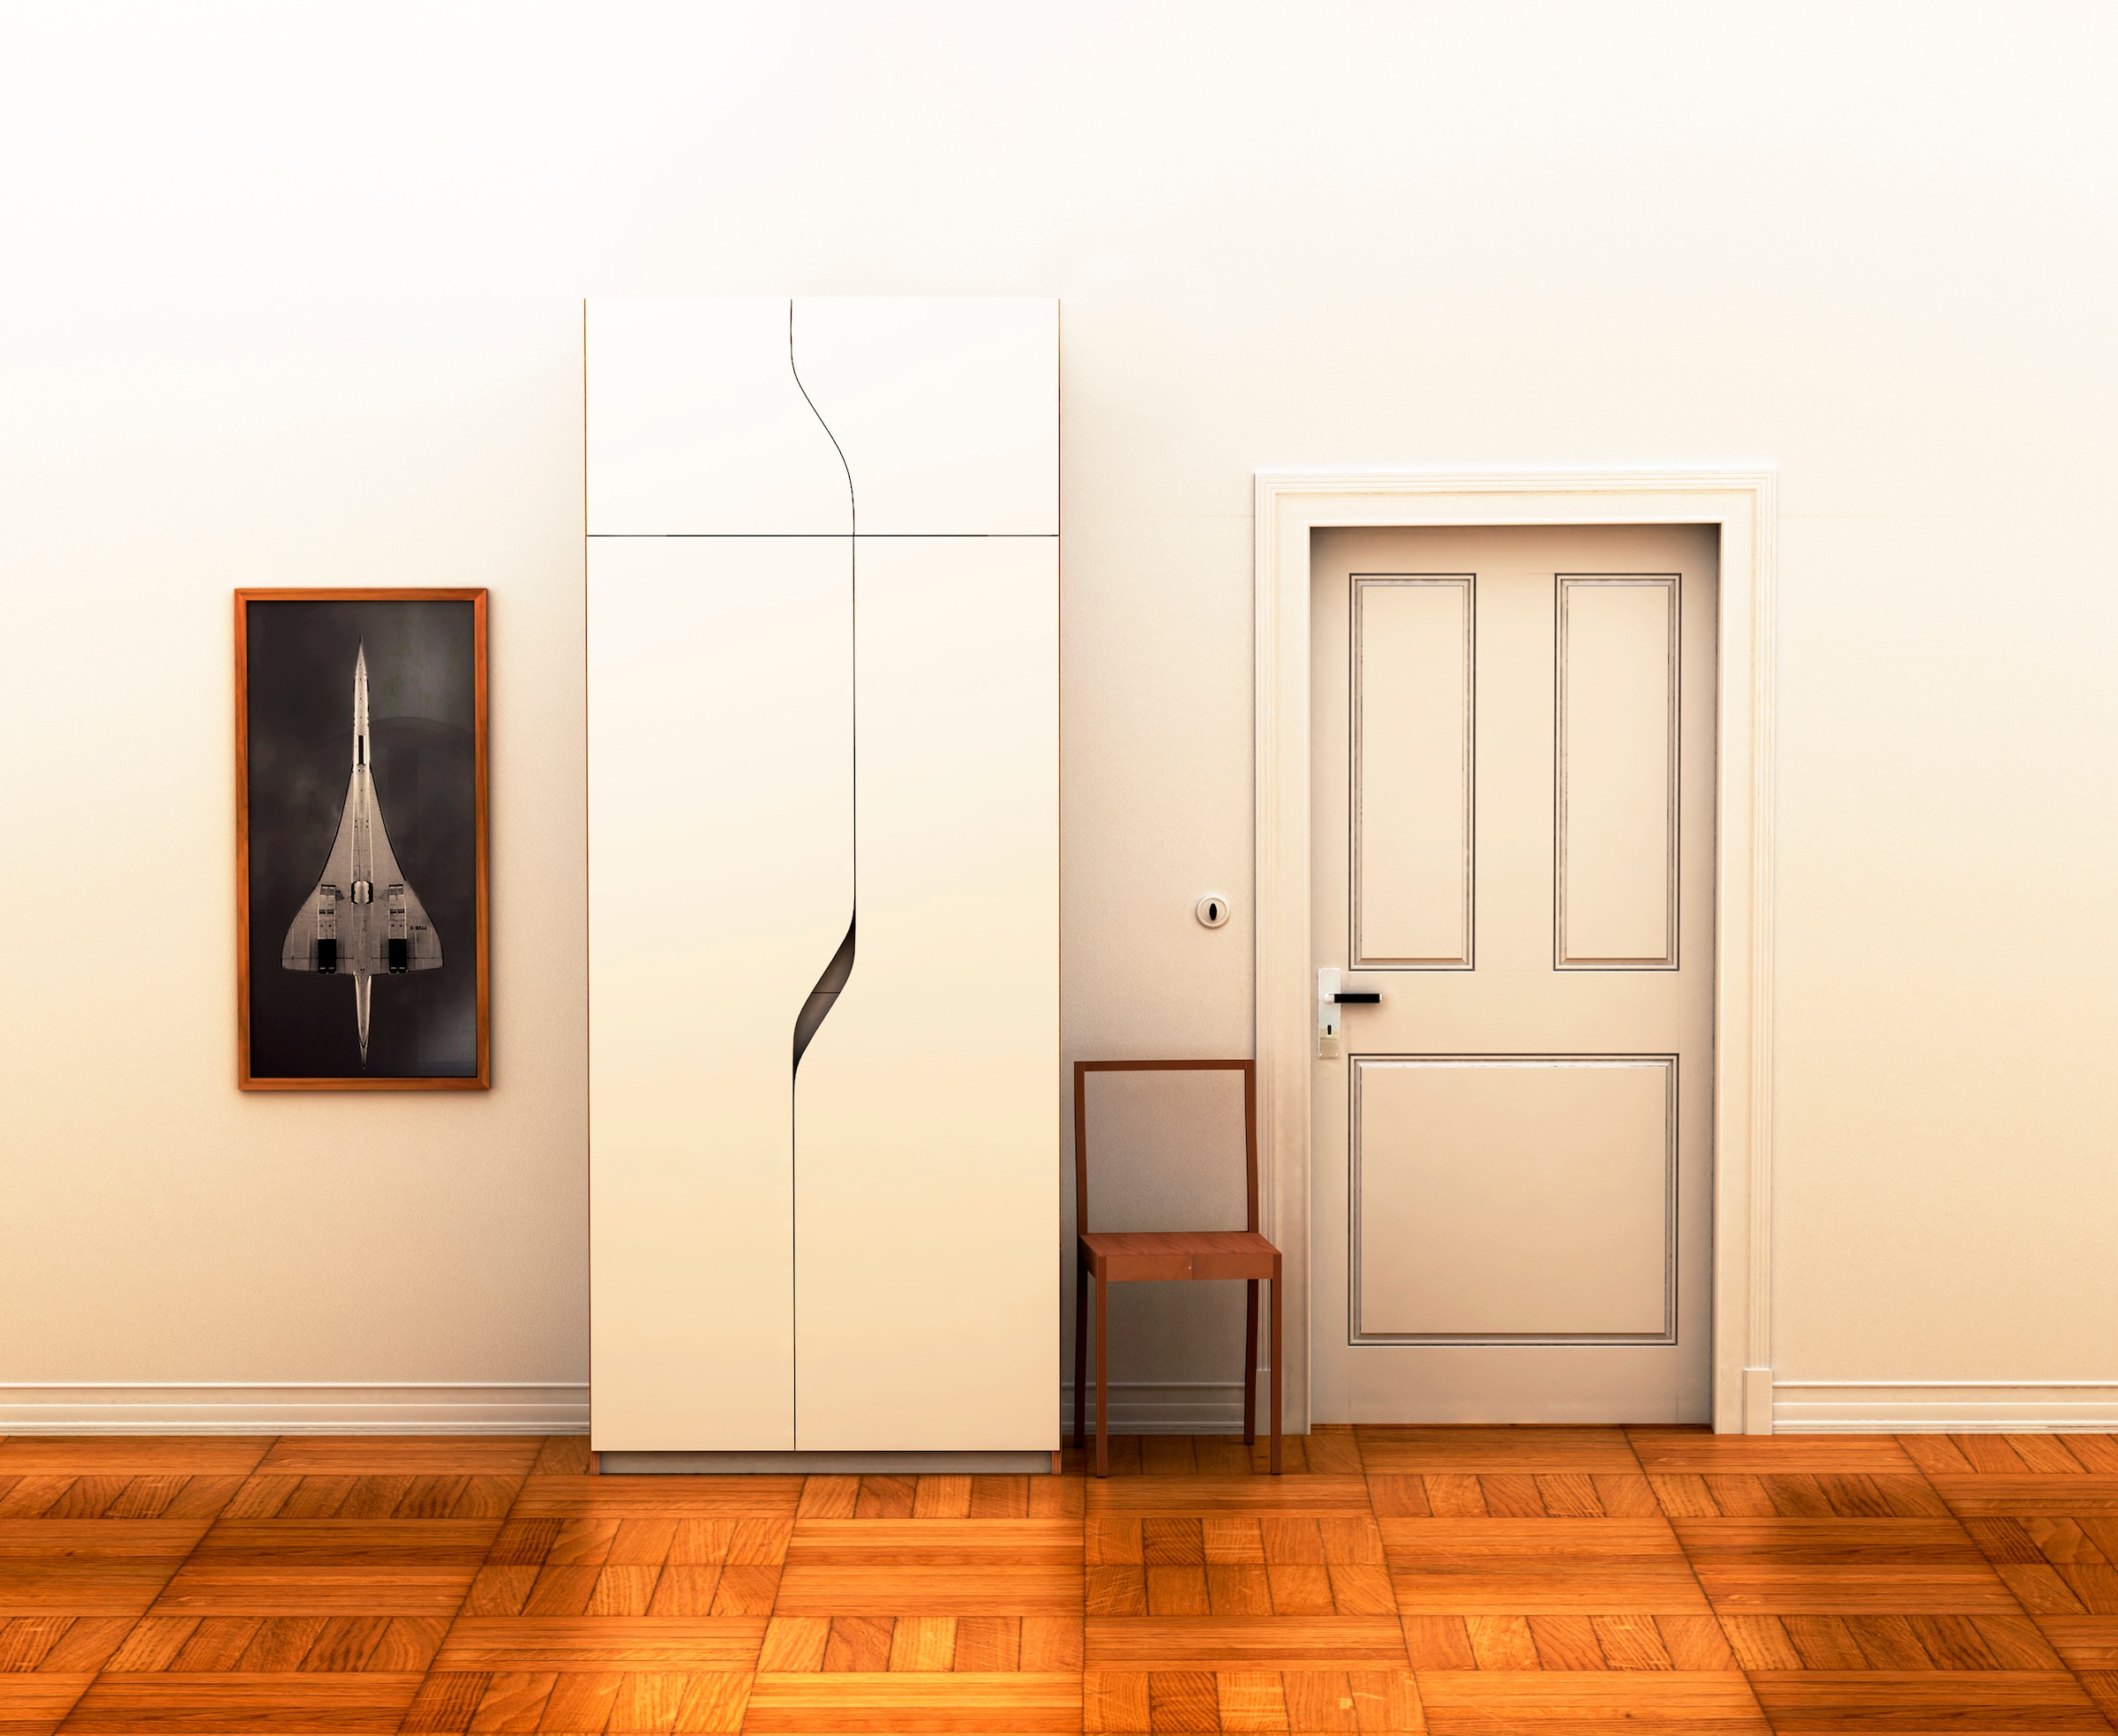 Müller SMALL LIVING Kleiderschrank »PLANE Ausstattung Nr. 3«, Inklusive einer innenliegenden Tür, einer Kleiderstange und 12 Fächern